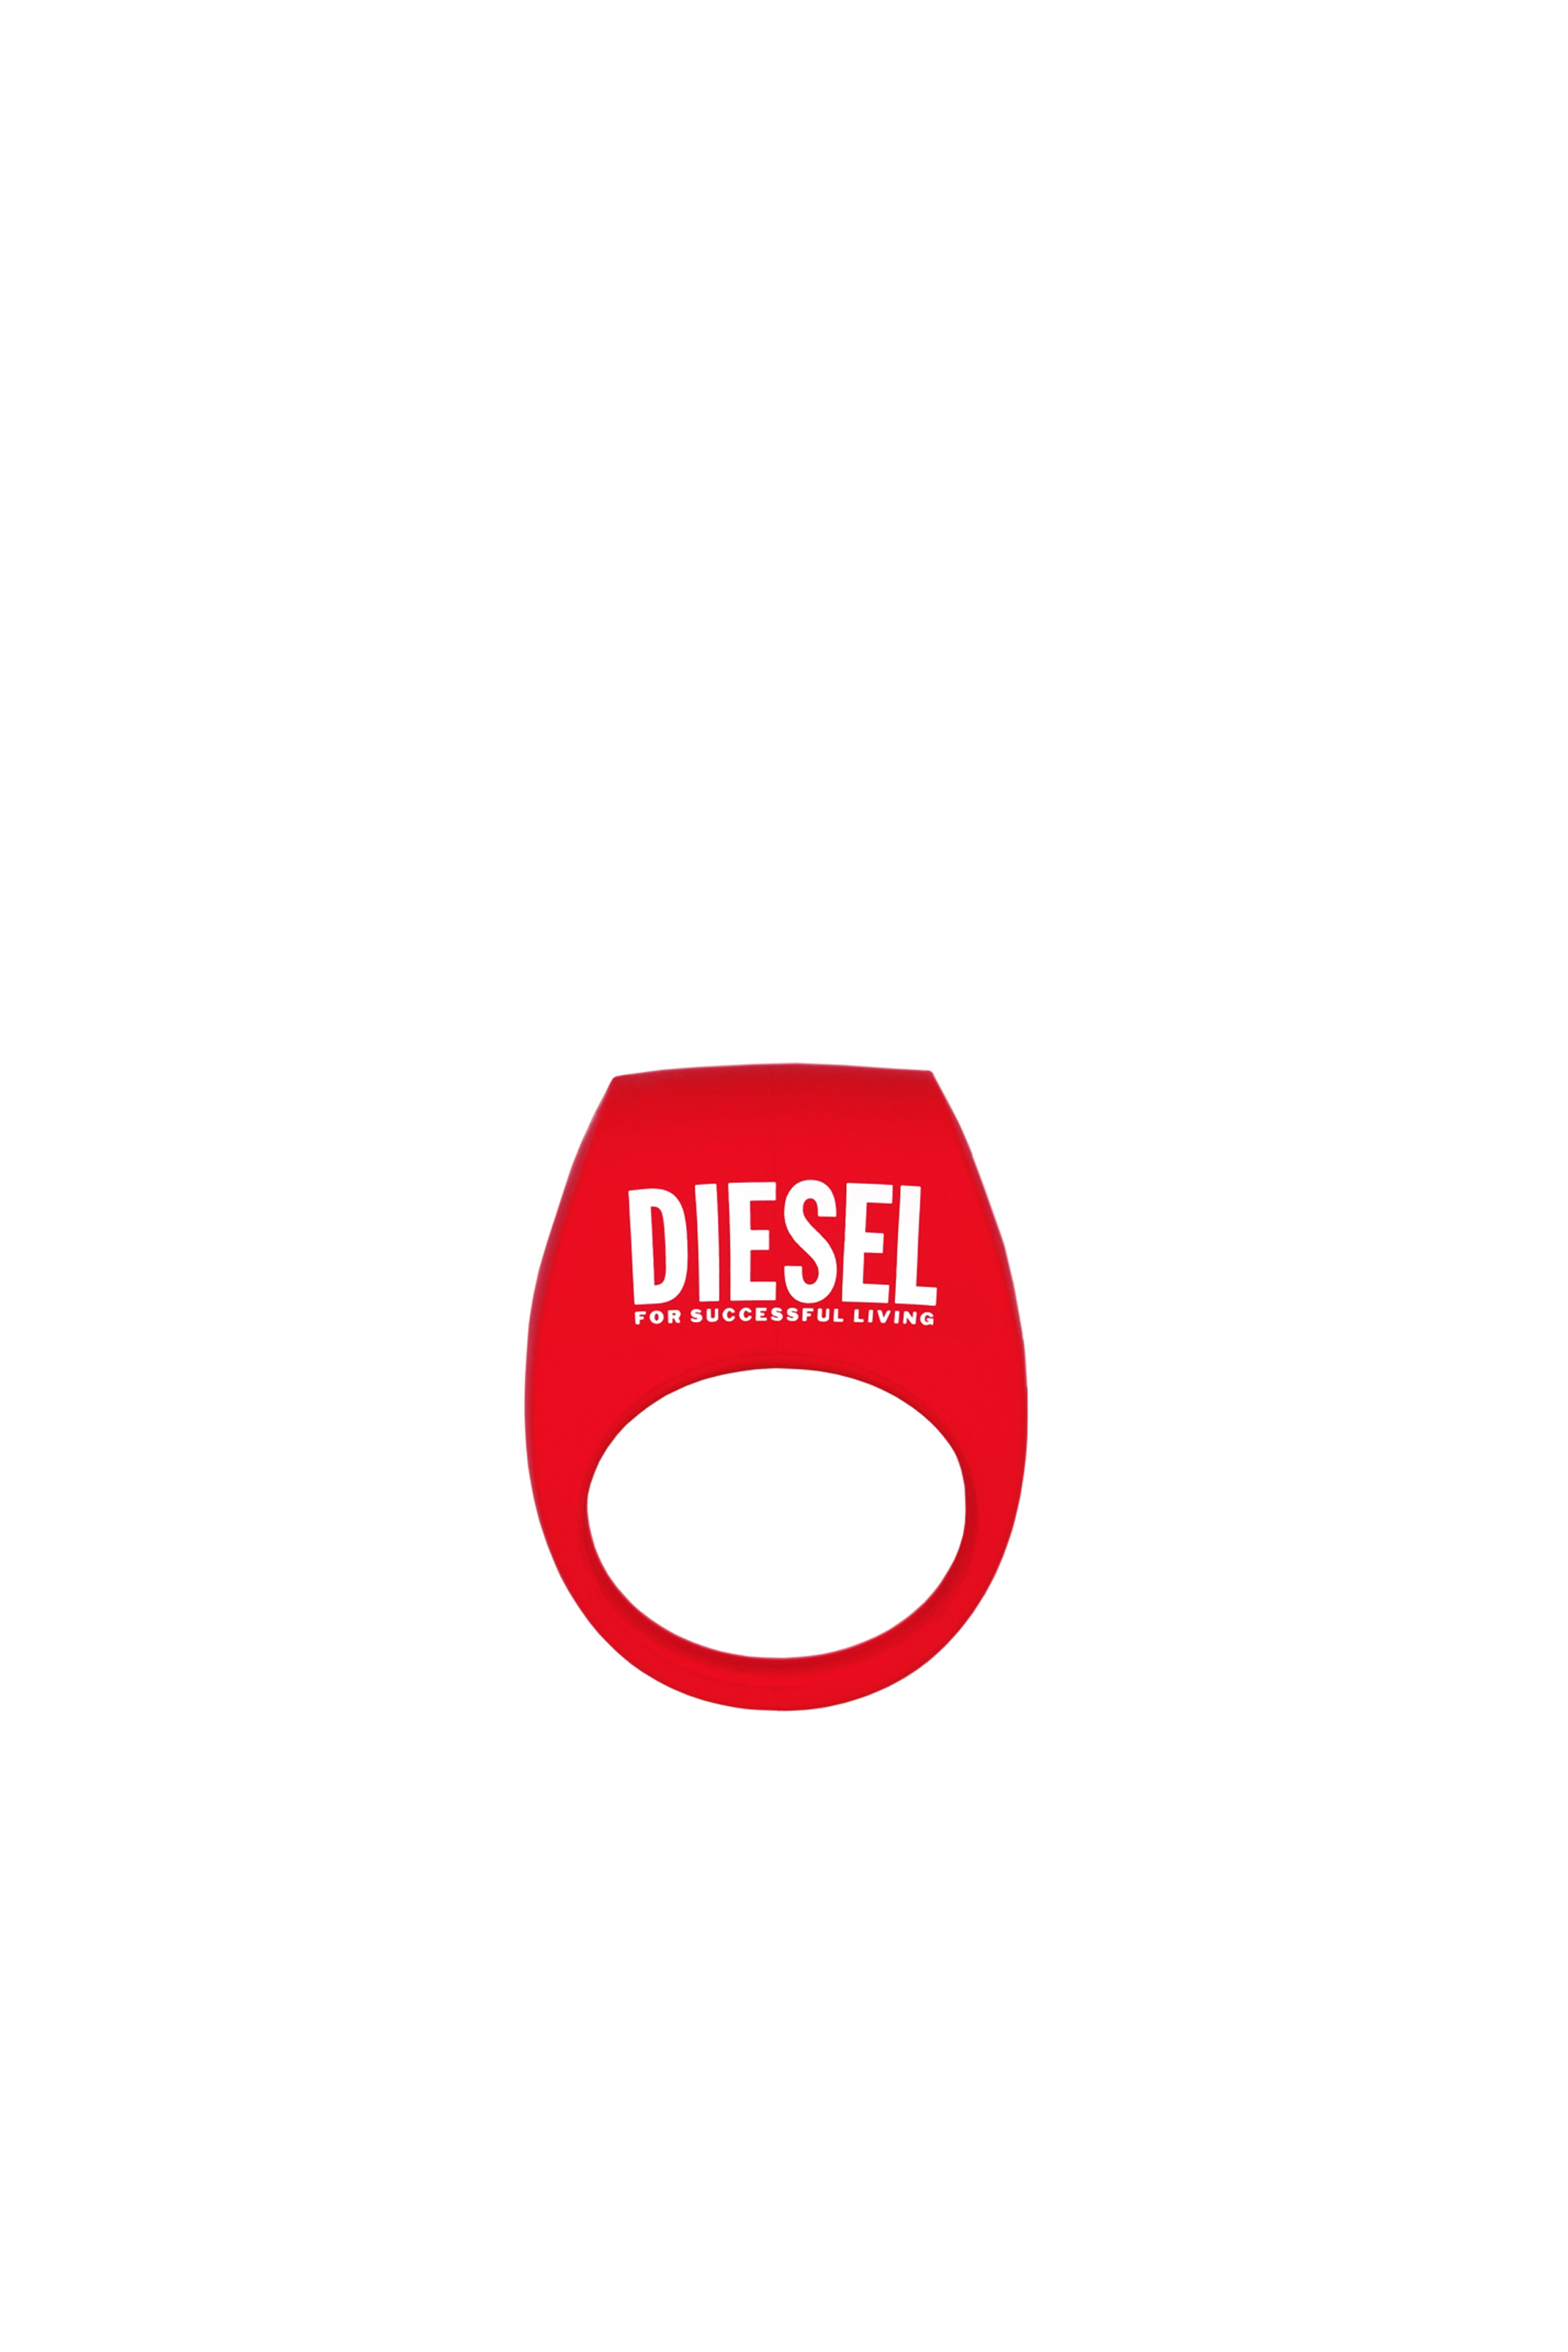 Diesel - 8694 TOR 2 X DIESEL, Red - Image 1